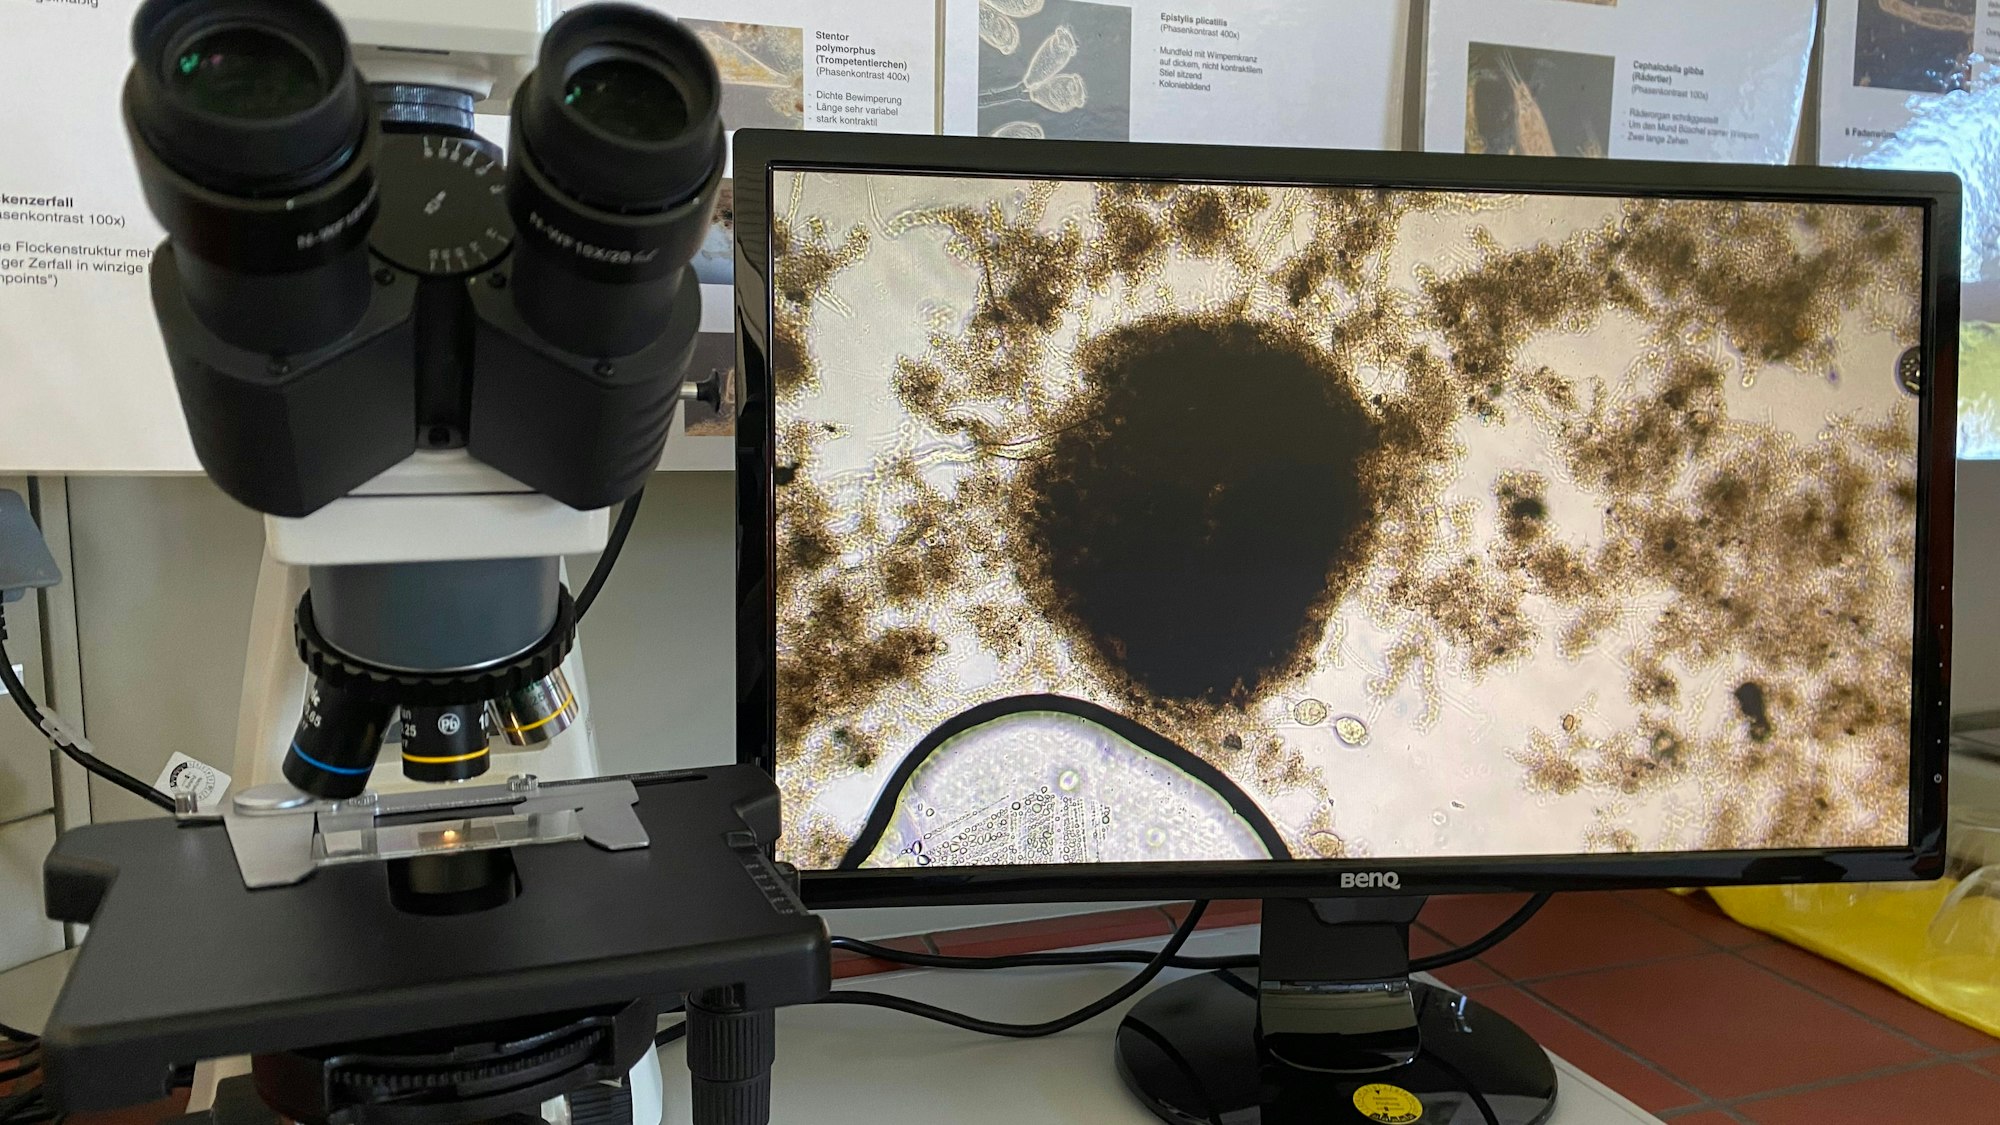 Das Bild zeigt ein Mikroskop. Daneben befindet sich ein Bildschirm, auf dem Mikroorganismen zu sehen sind.